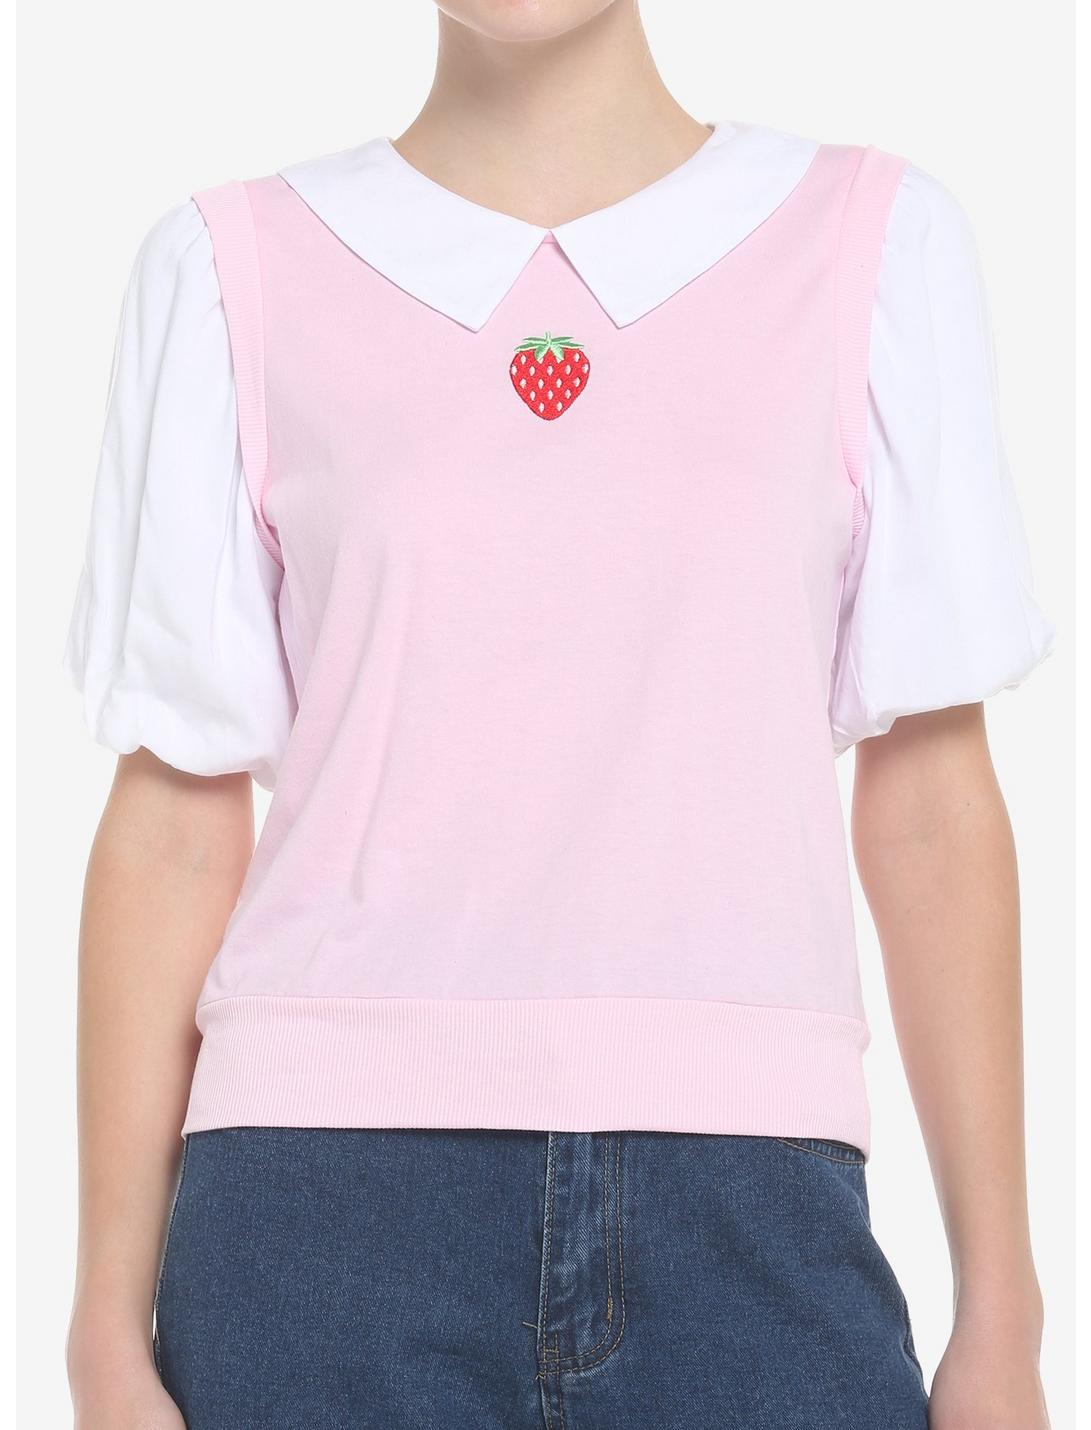 Strawberry Twofer Sweater Vest & Collar Girls Top, PINK, hi-res